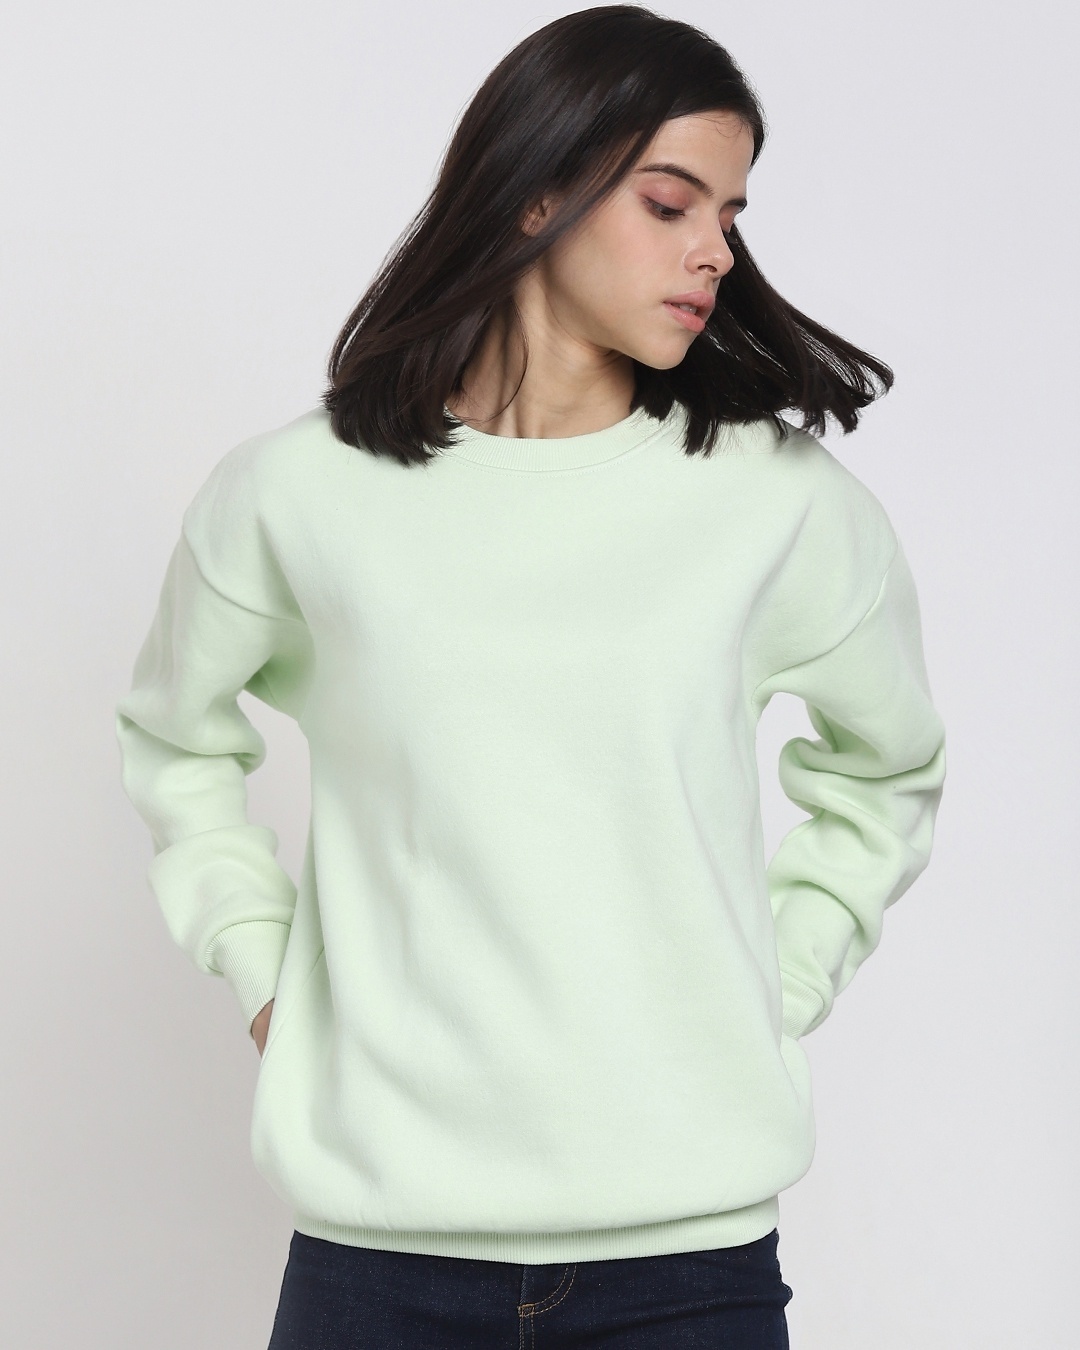 Buy Women's Green Oversized Sweatshirt Online at Bewakoof